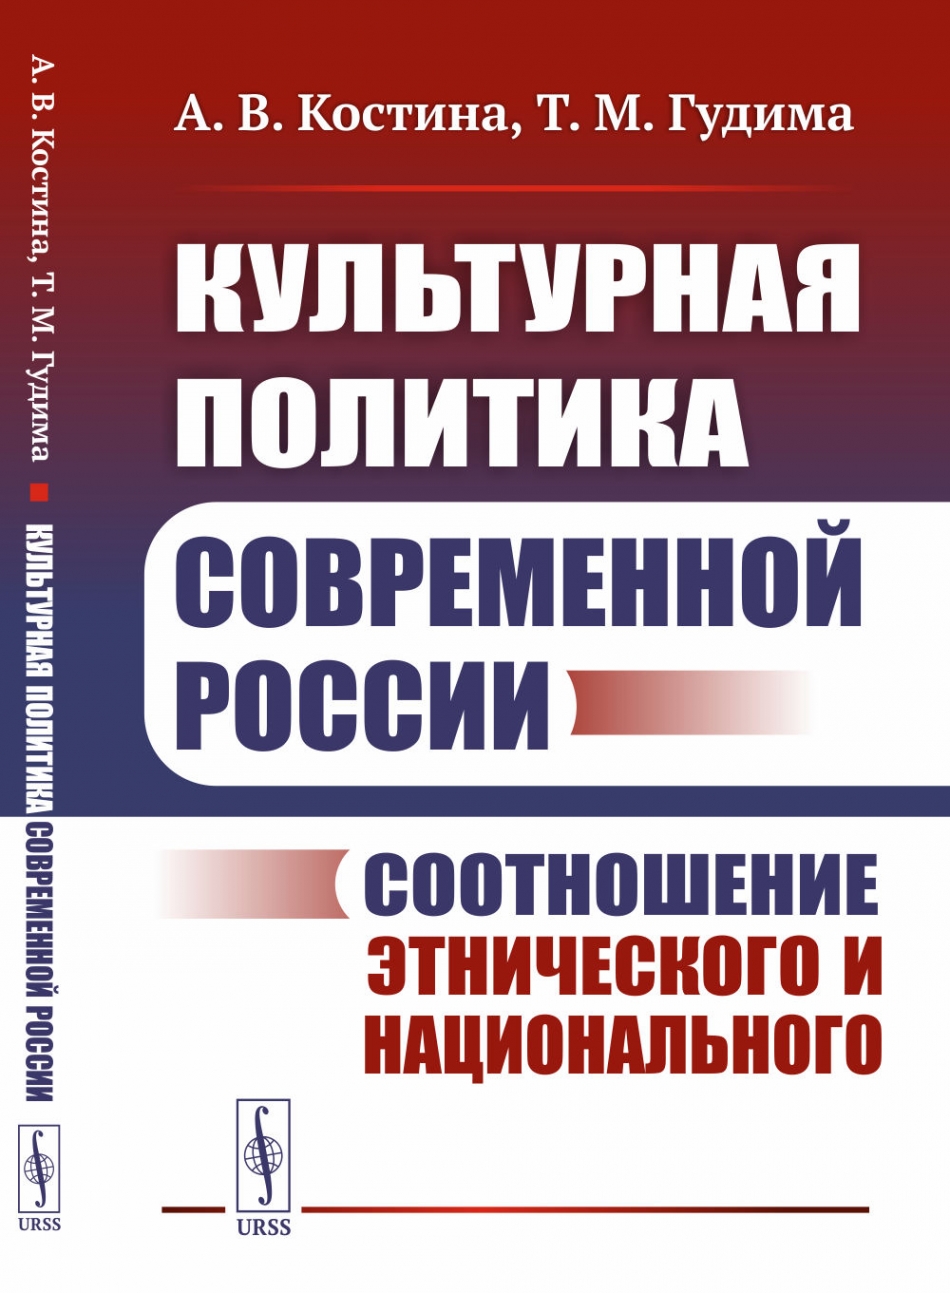 Костина А.В., Гудима Т.М. Культурная политика современной России: Соотношение этнического и национального 